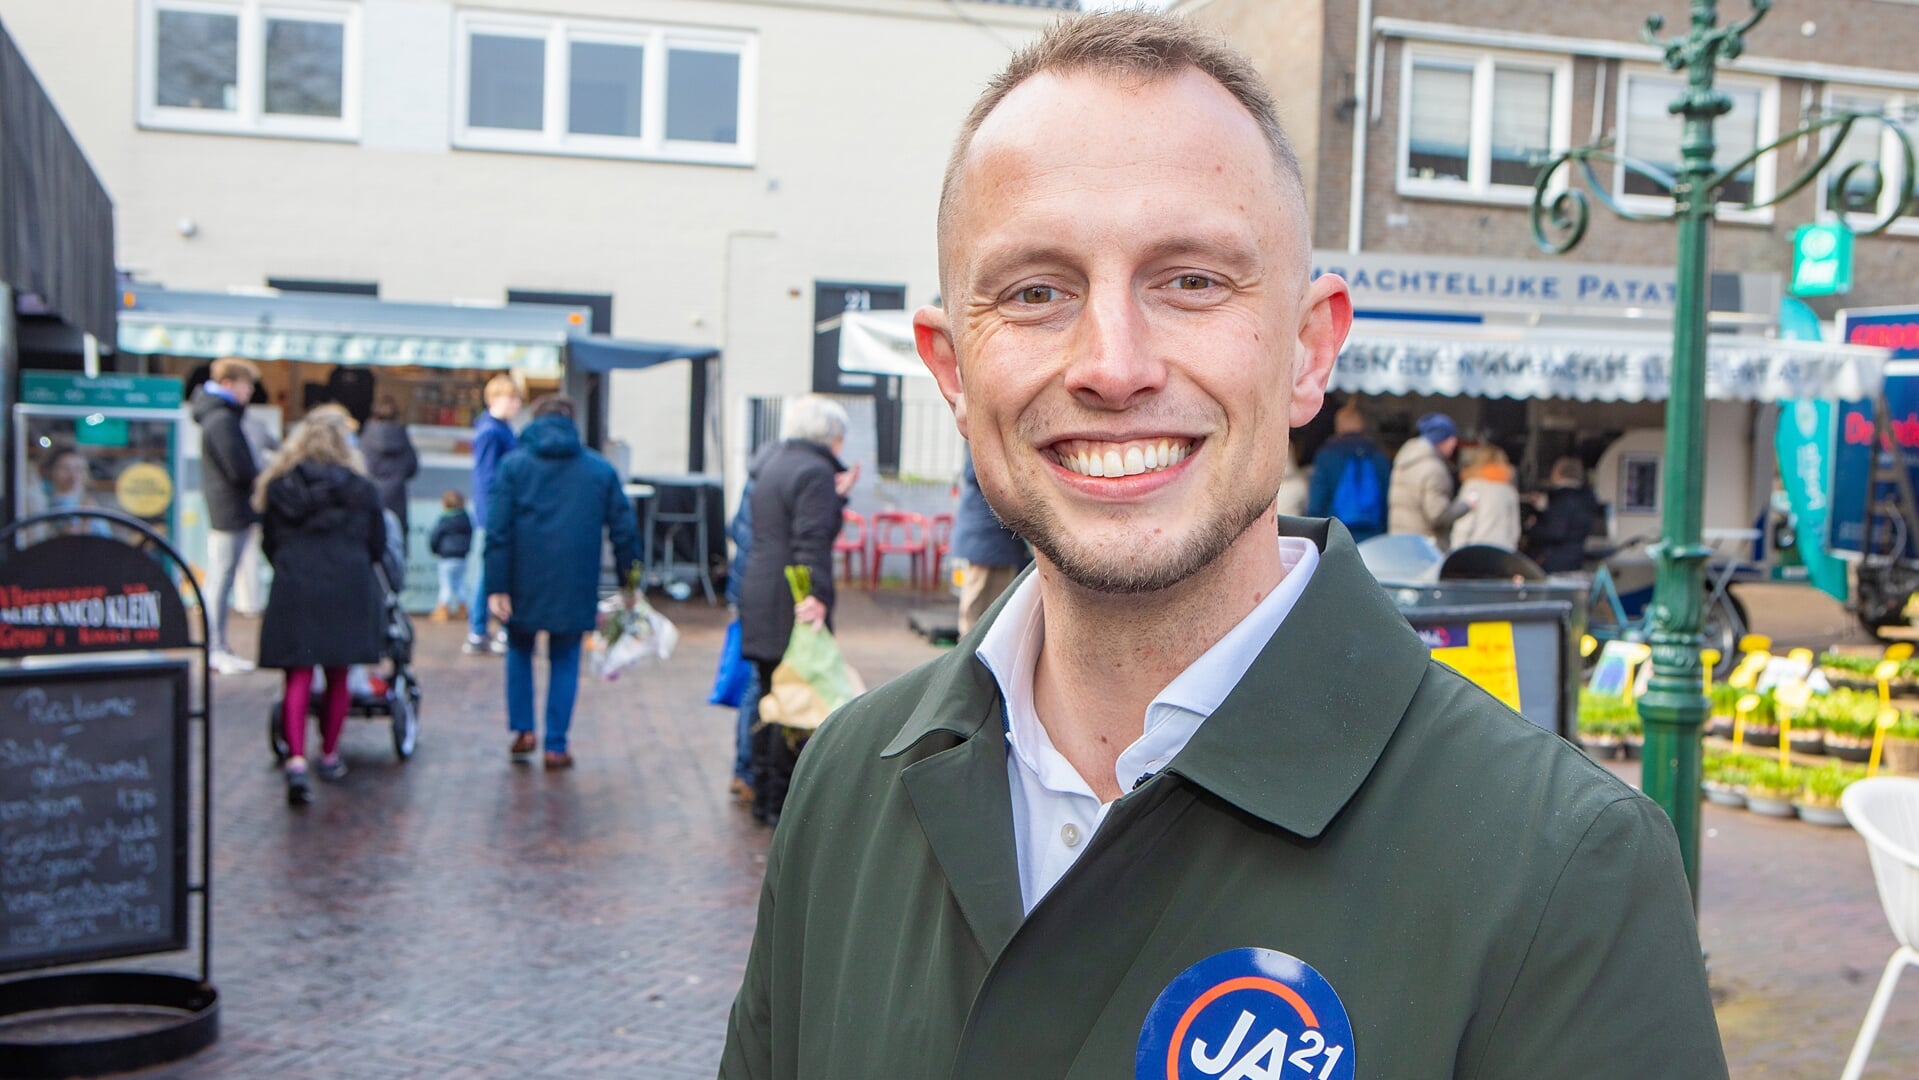 Daniël van den Berg in actie op de markt in Huizen.